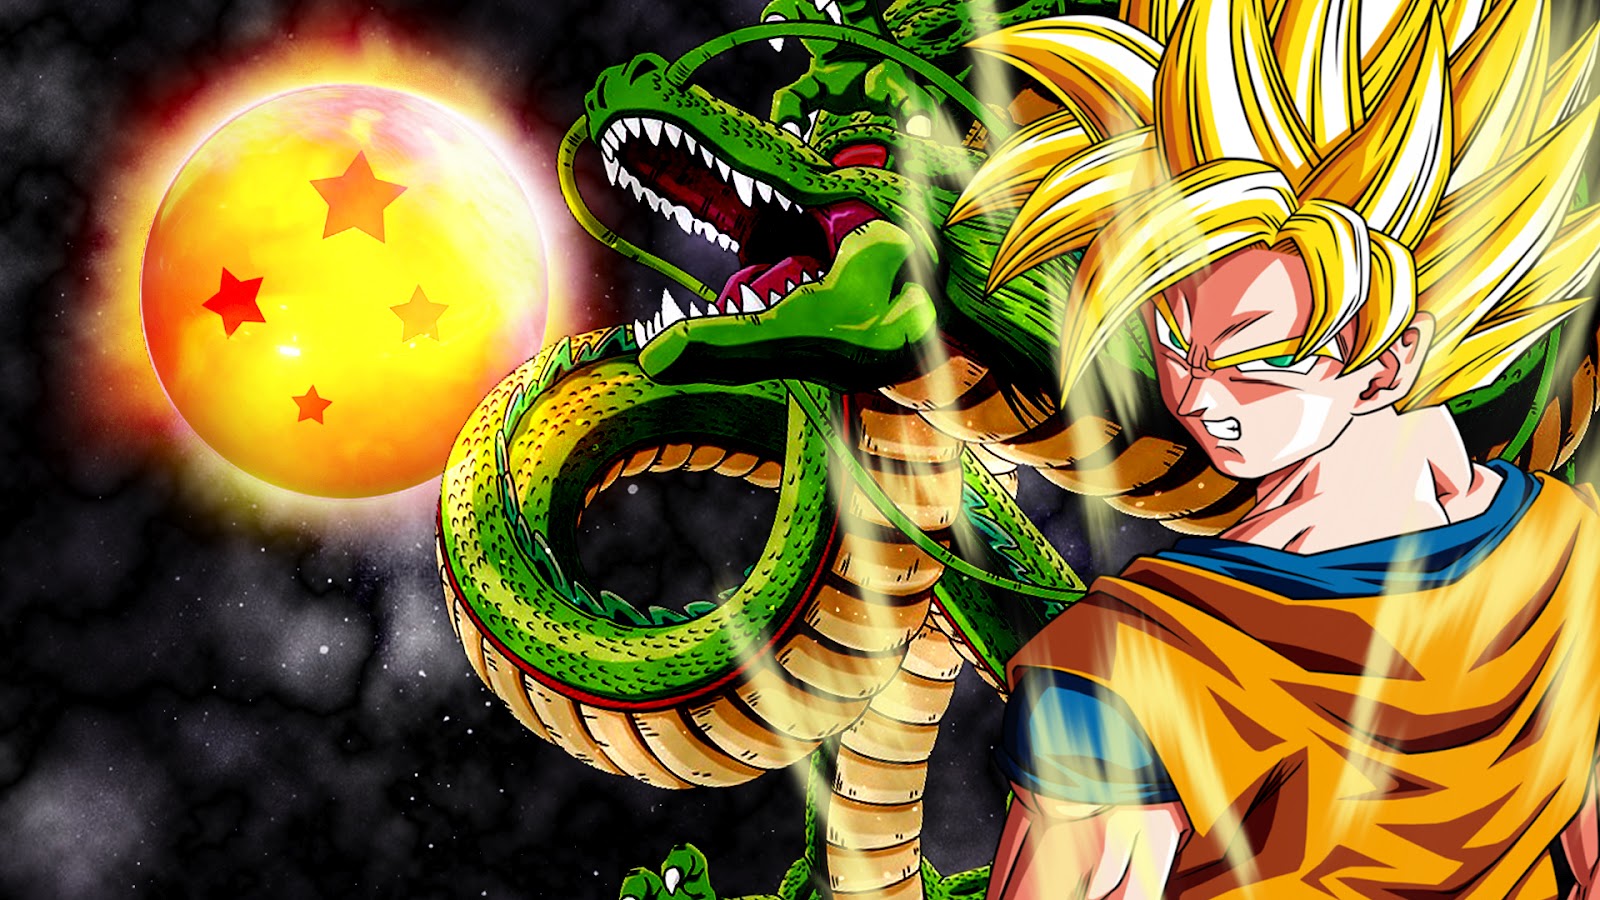 Wallpaper De Goku En HD